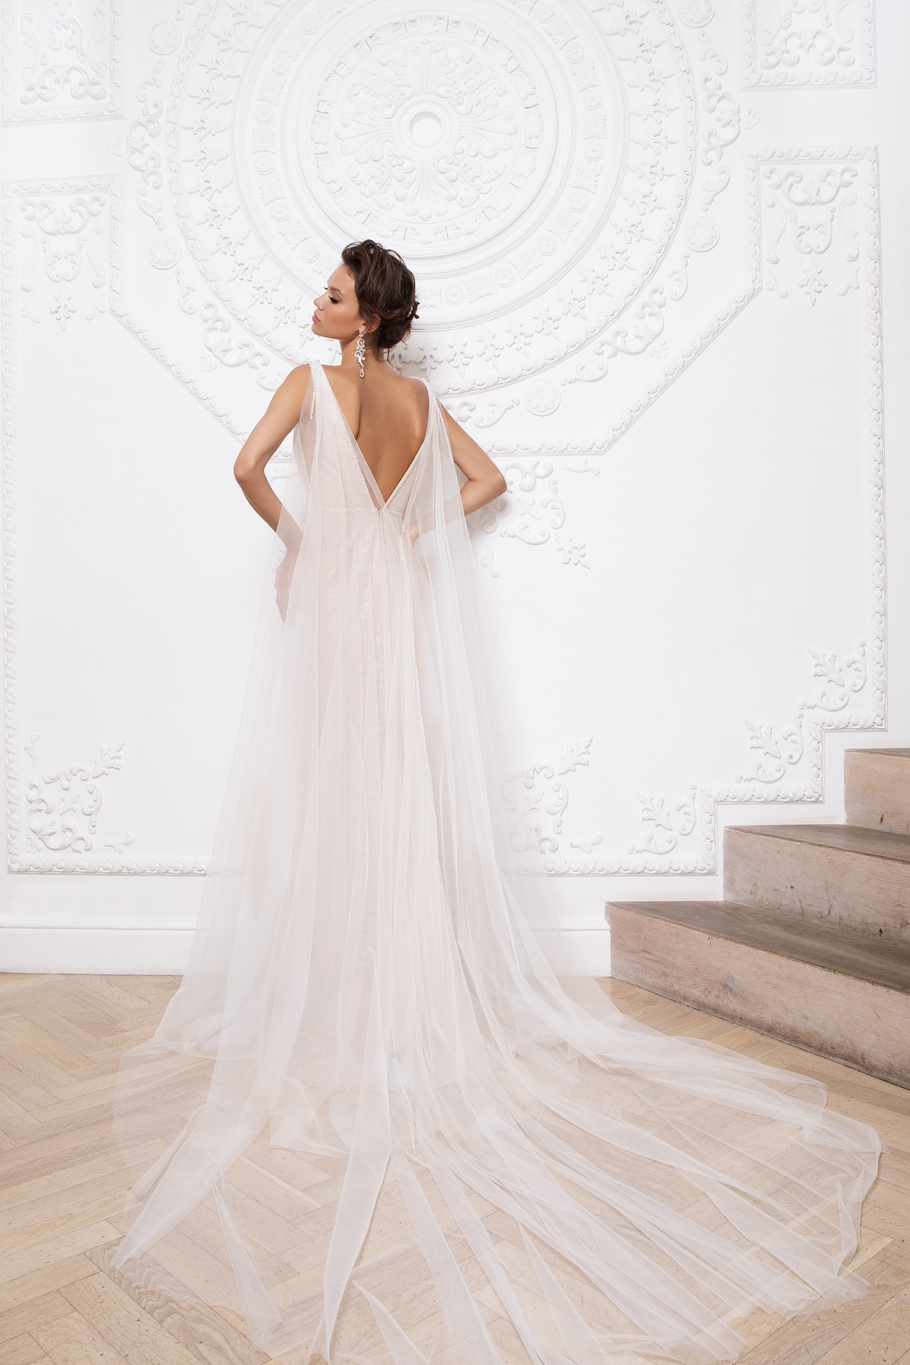 Купить свадебное платье «Прадин» Мэрри Марк из коллекции 2020 года в Воронеже